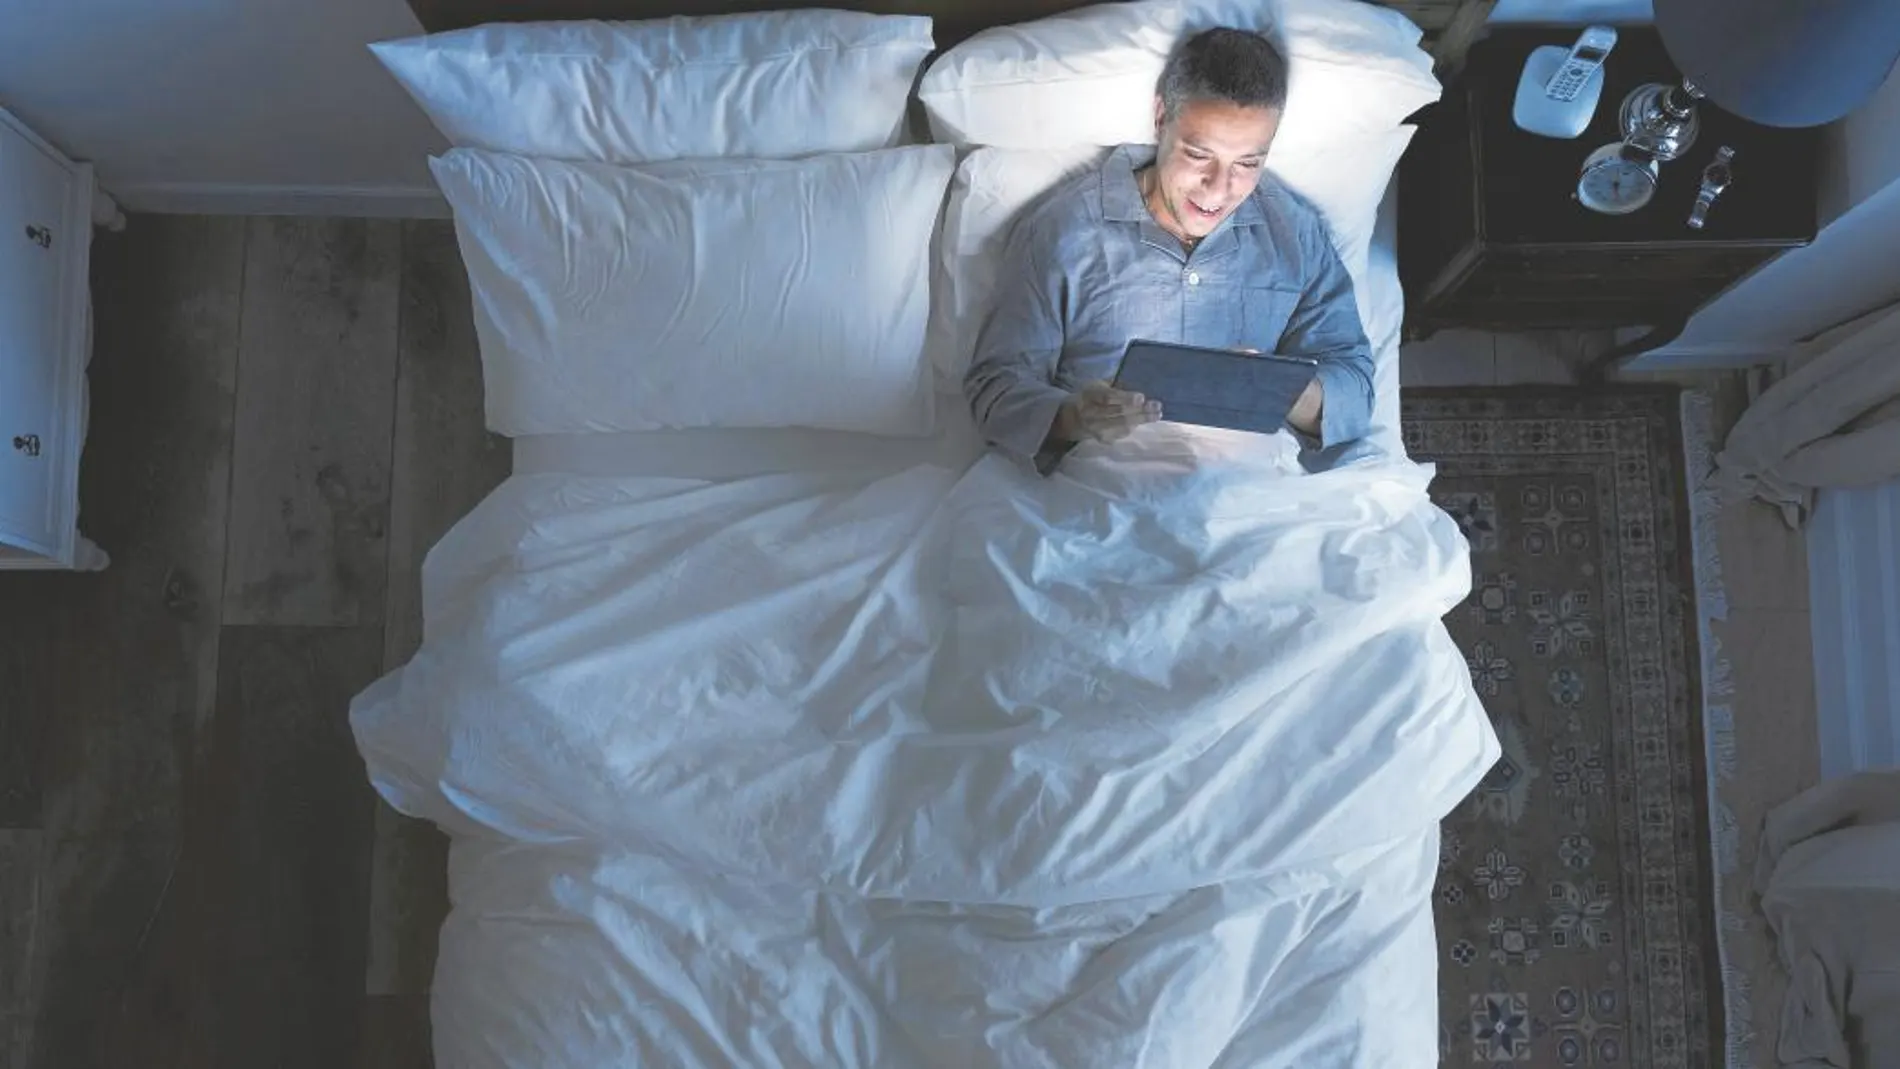 Insomnio tecnológico: La luz azul de los dispositivos anula la melatonina e impide conciliar el sueño